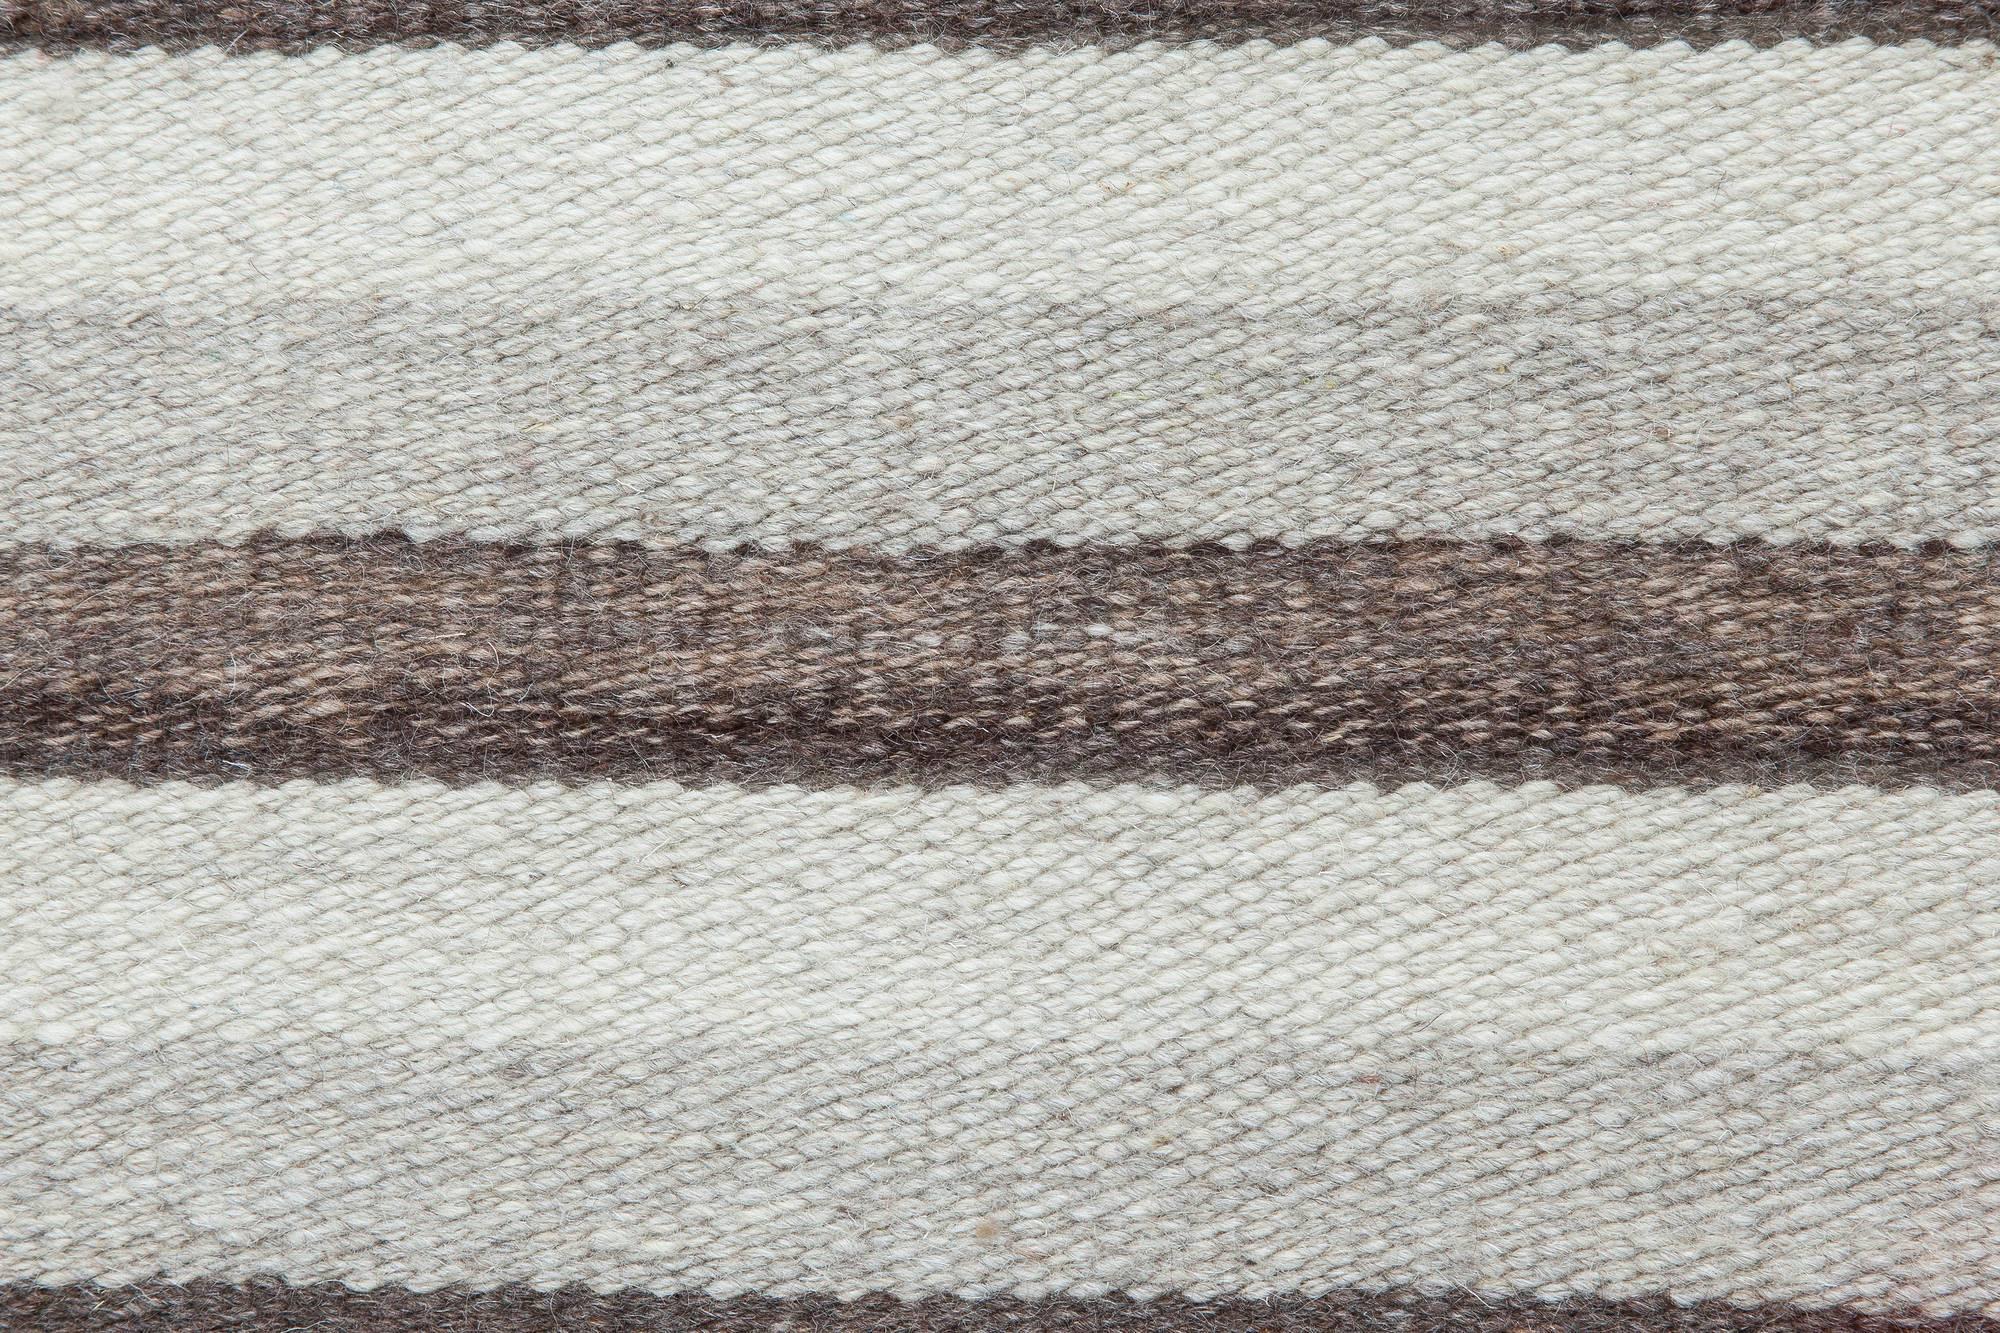 Tapis moderne en laine grise rayée tissée à plat, par Doris Leslie Blau.
Taille : 3'2